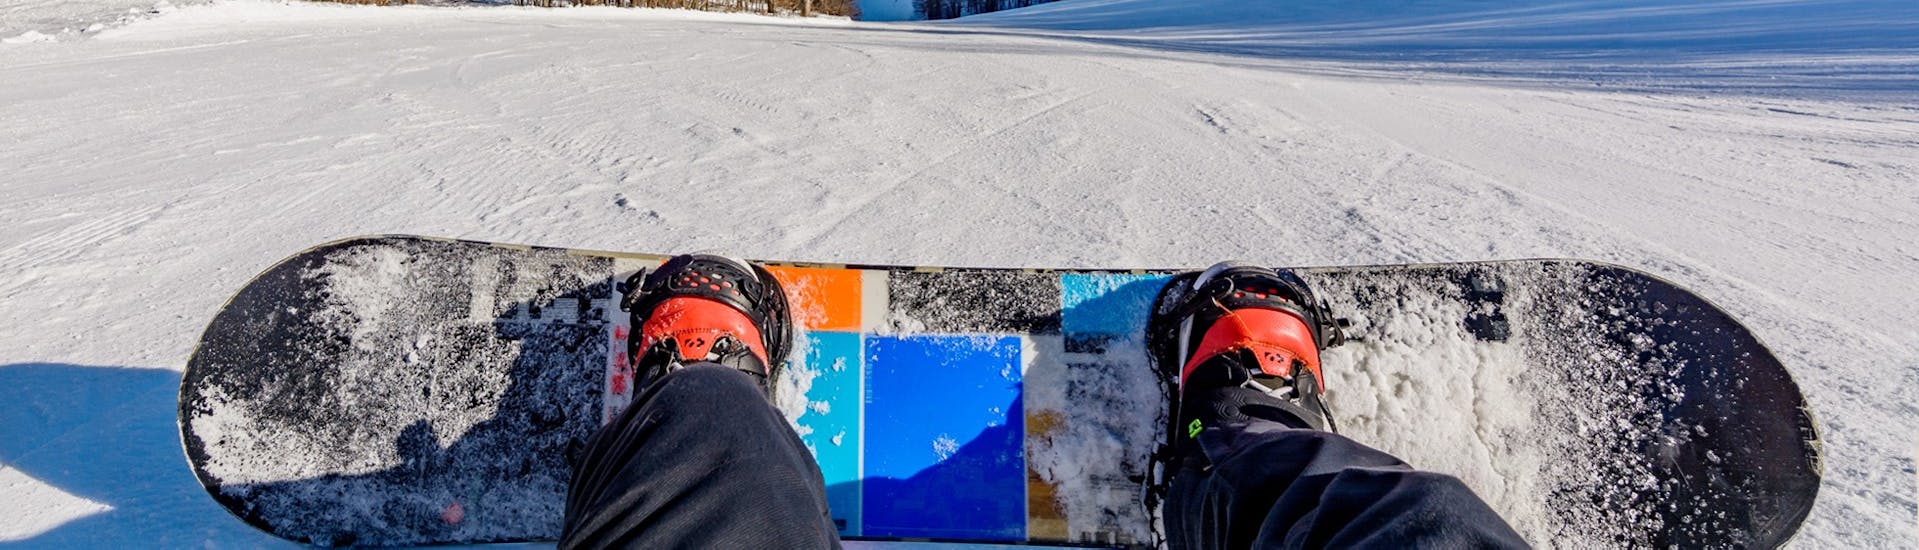 Privé snowboardlessen vanaf 4 jaar voor alle niveaus.